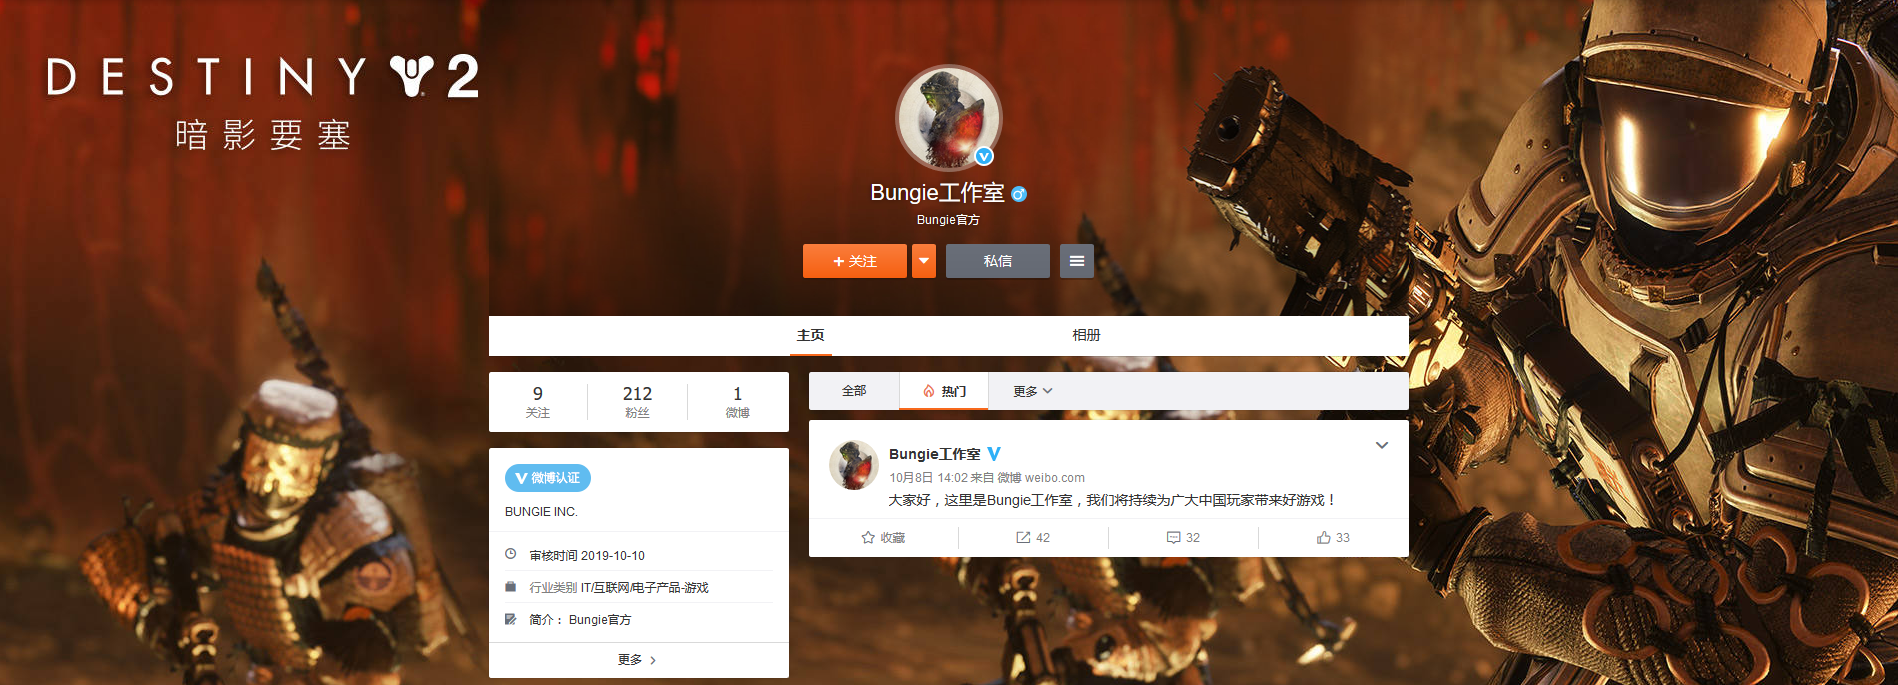 命运2开发商开通中文官博将为中国玩家带来更多惊喜_Bungie